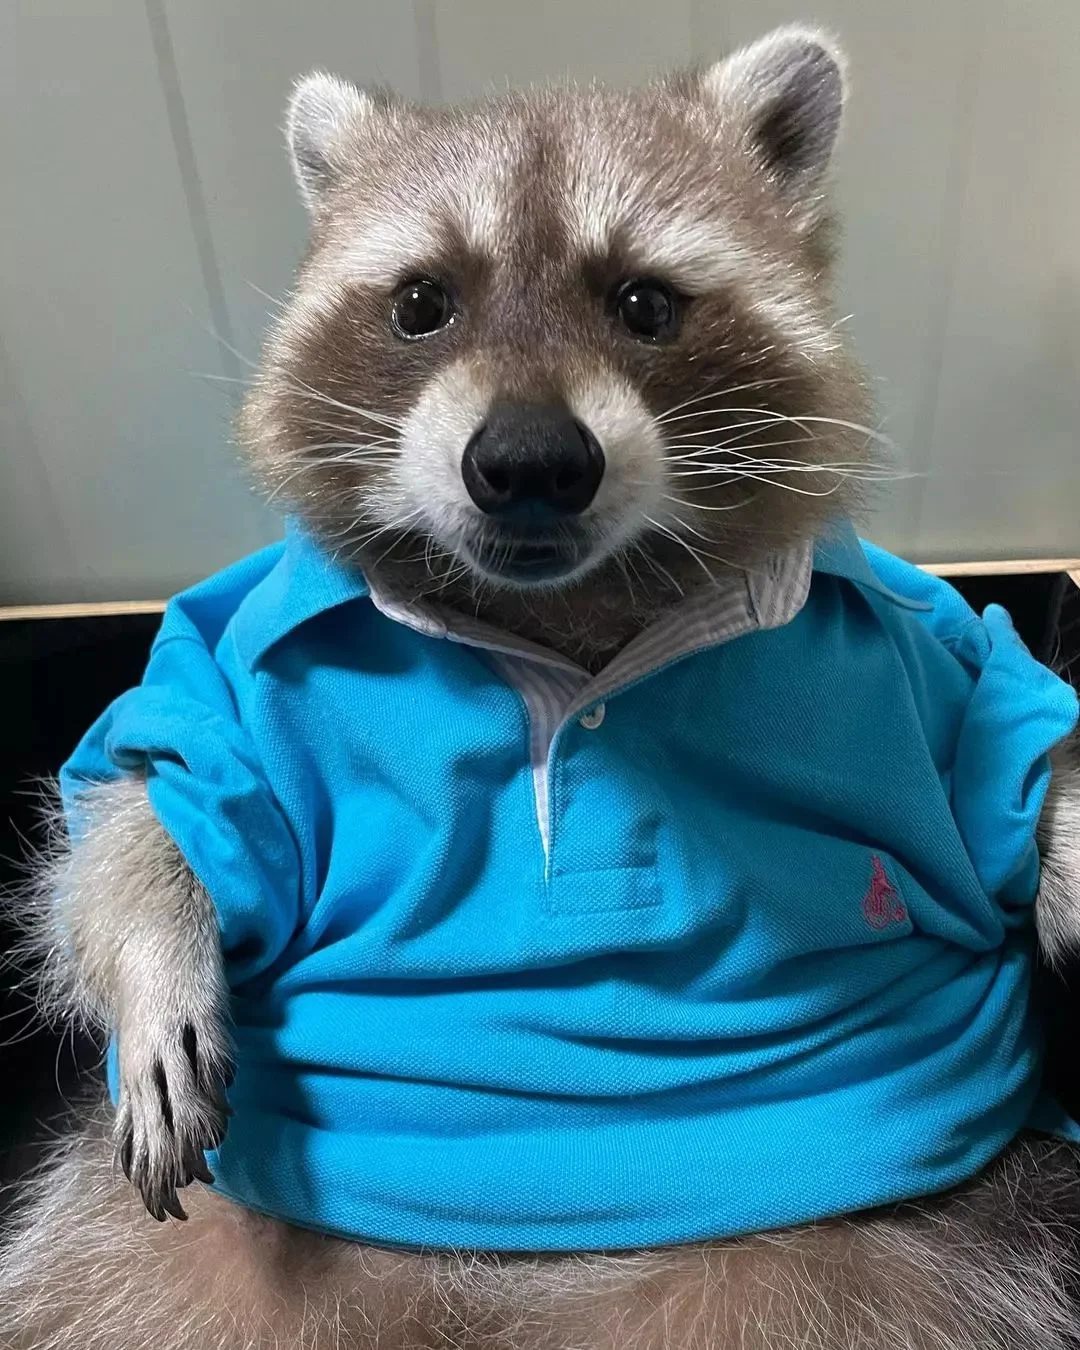 Raccoon wearing a shirt.